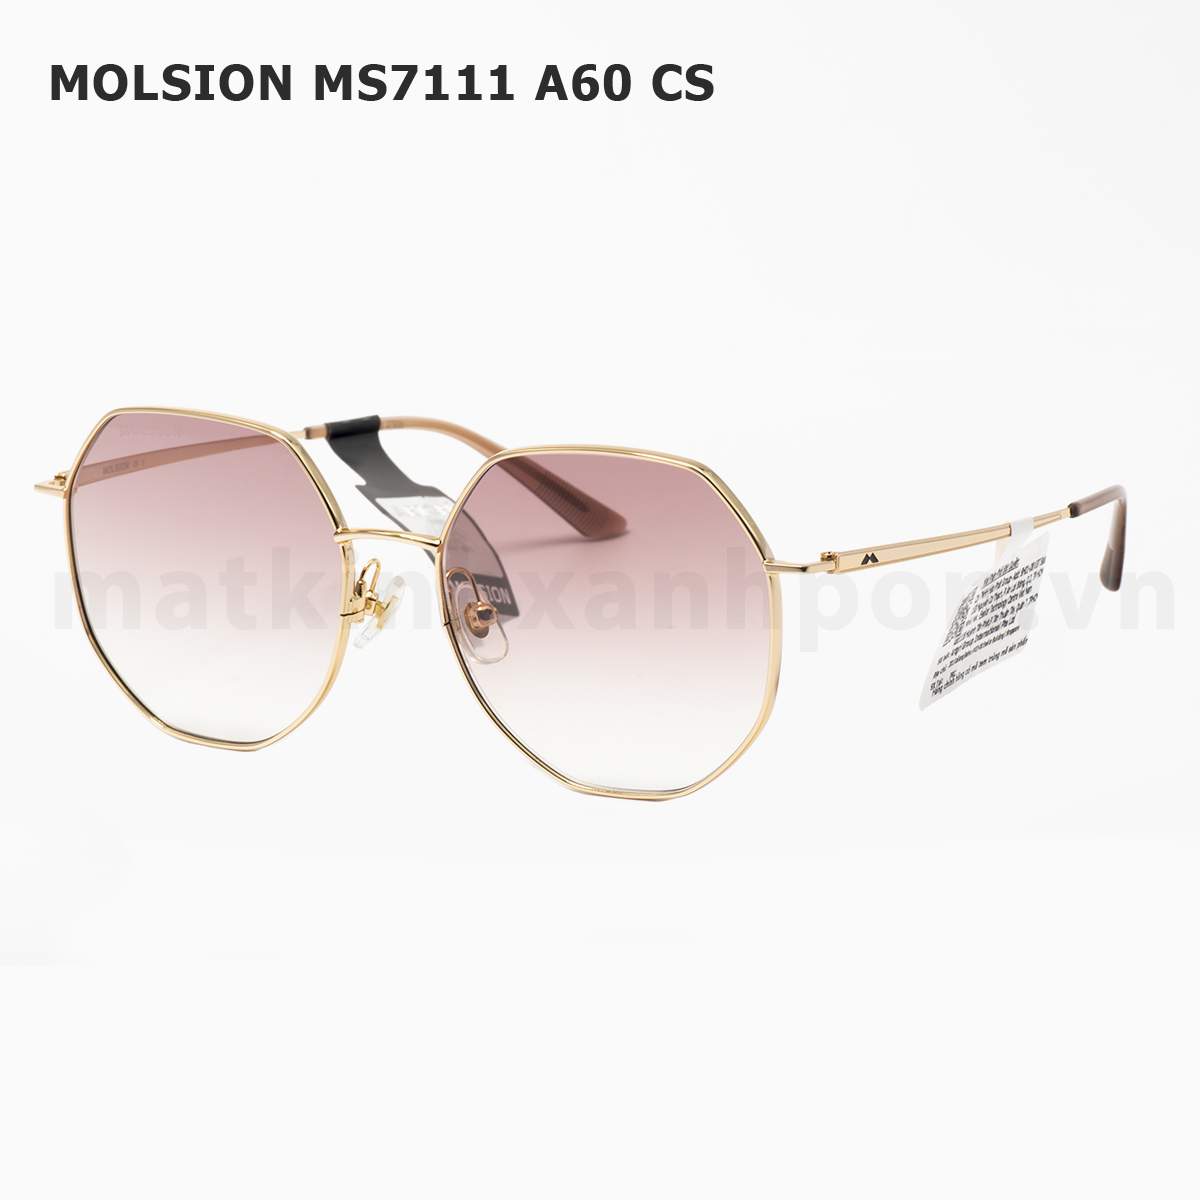 Molsion MS7111 A60 CS